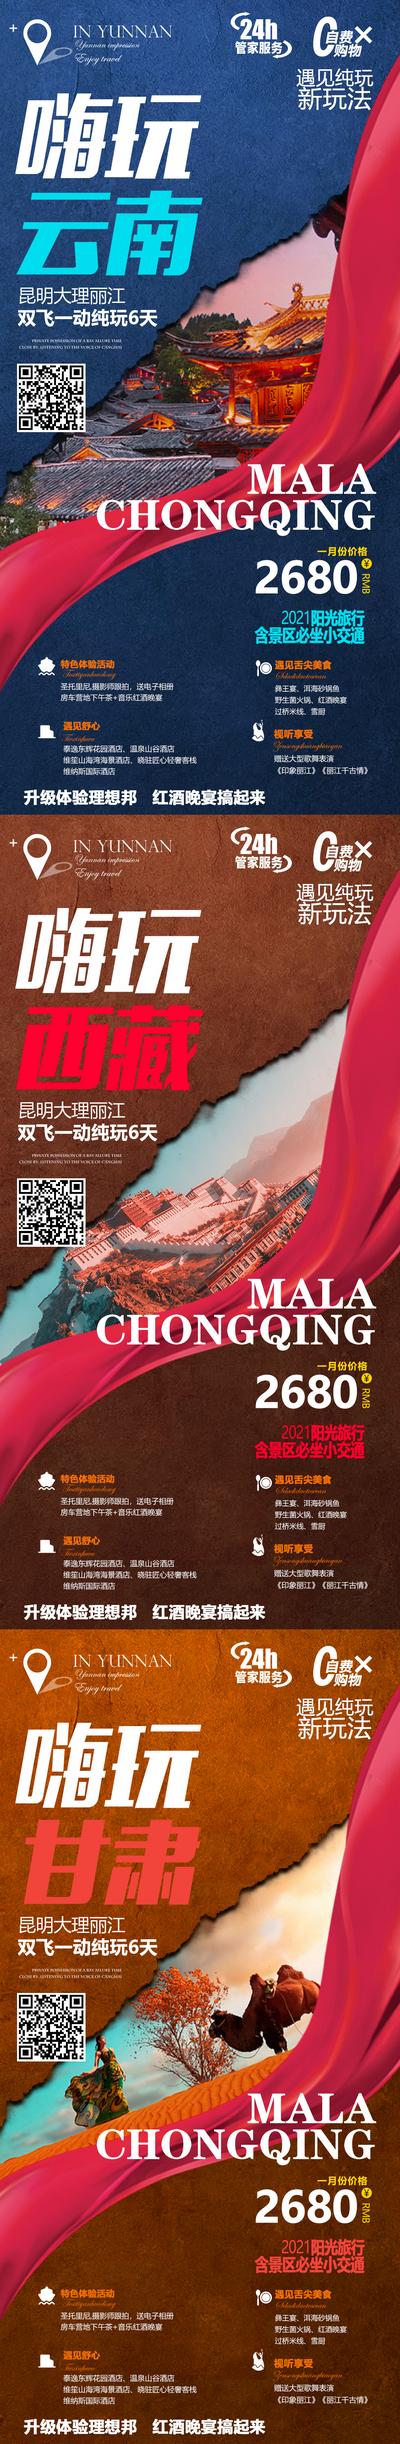 南门网 海报 旅游 云南 西藏 甘肃 行程 安排 系列 